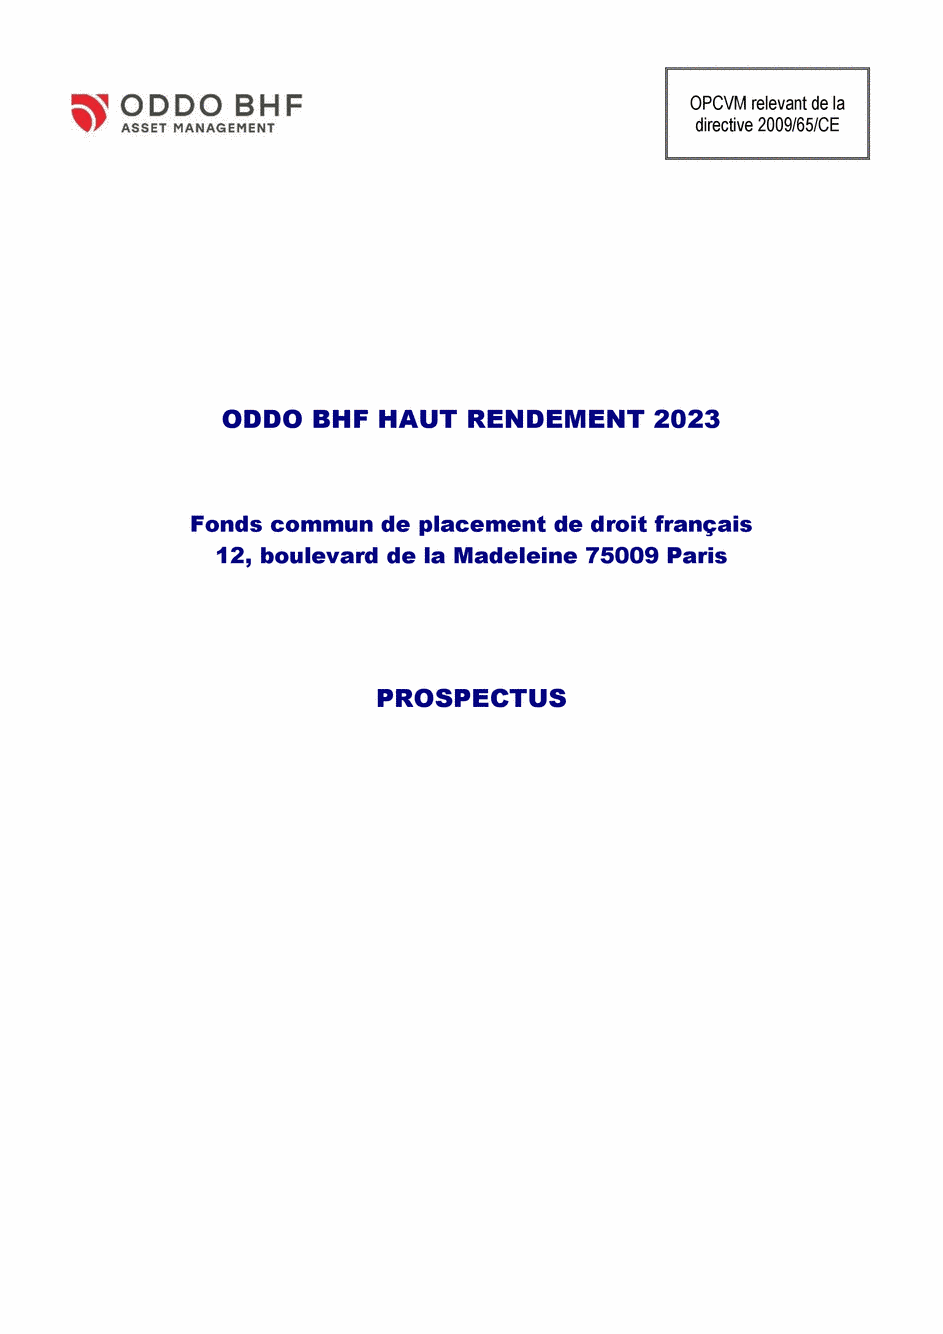 Prospectus ODDO BHF HAUT RENDEMENT 2023 DR-EUR - 25/09/2020 - Français